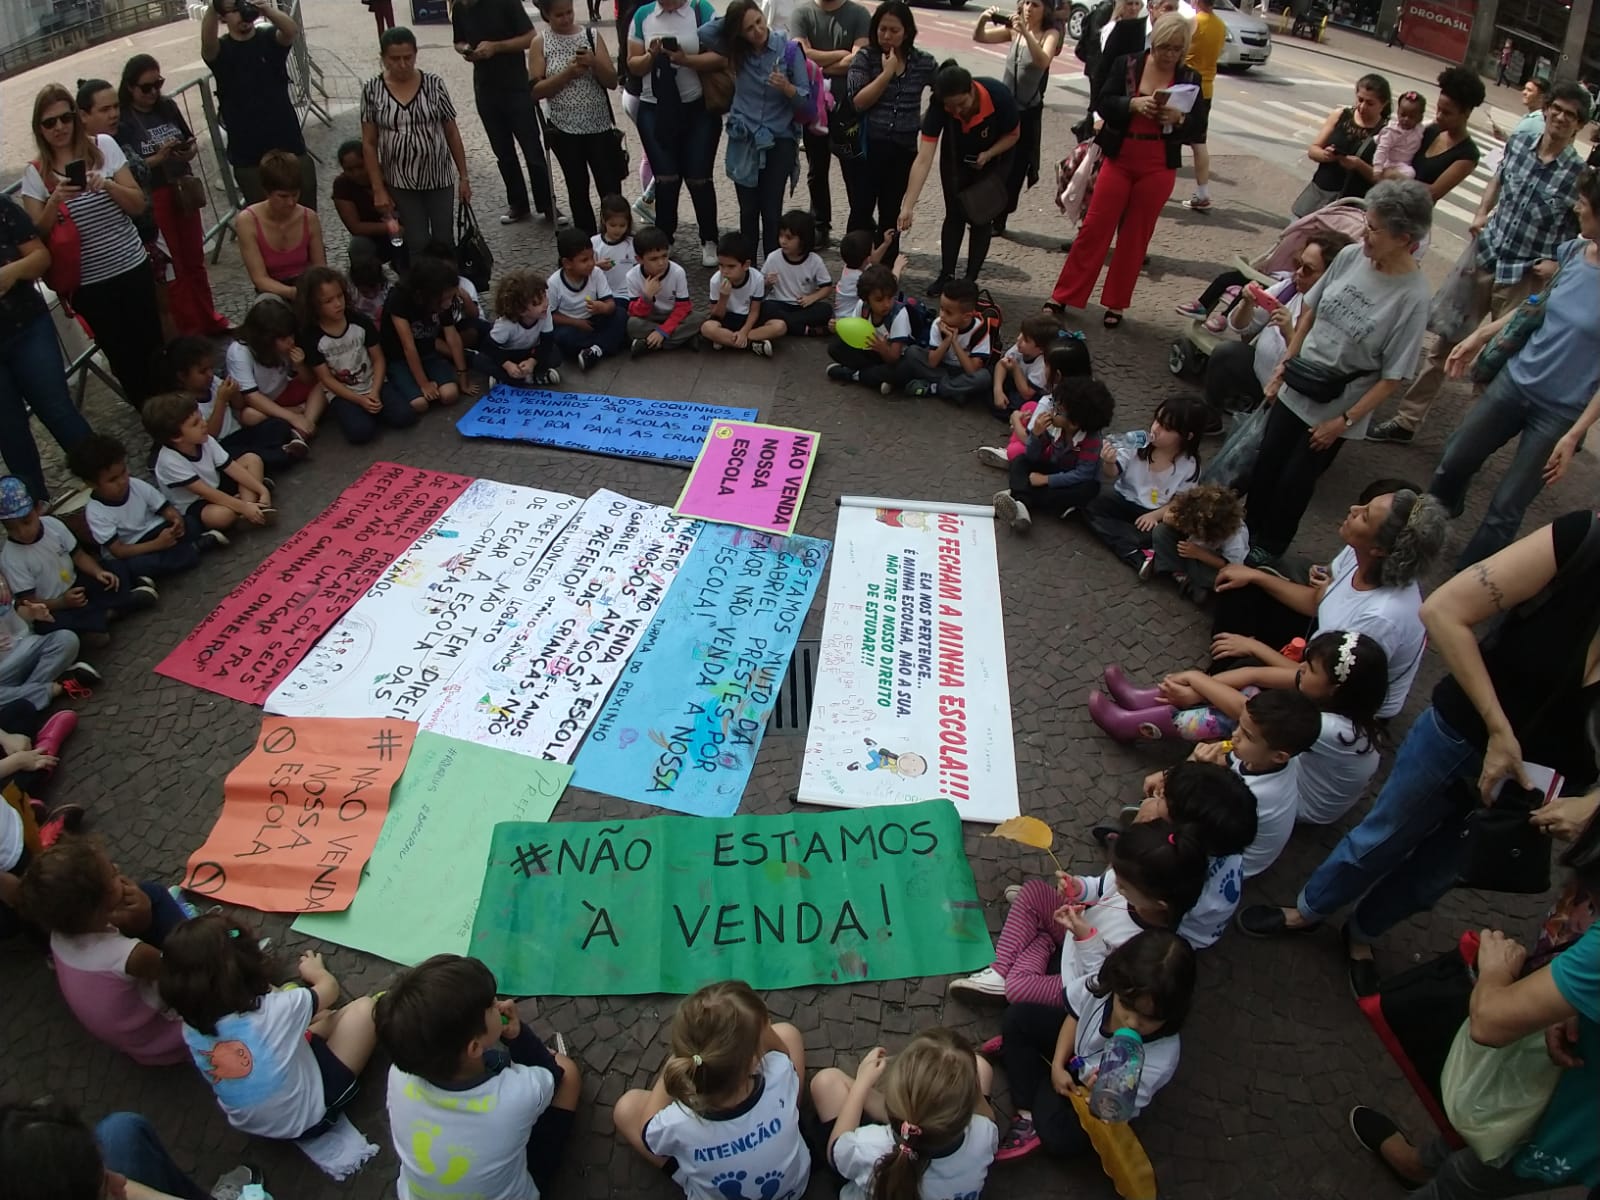 Venda de escolas: mobilização da comunidade escolar pressiona Covas a rever venda de terrenos